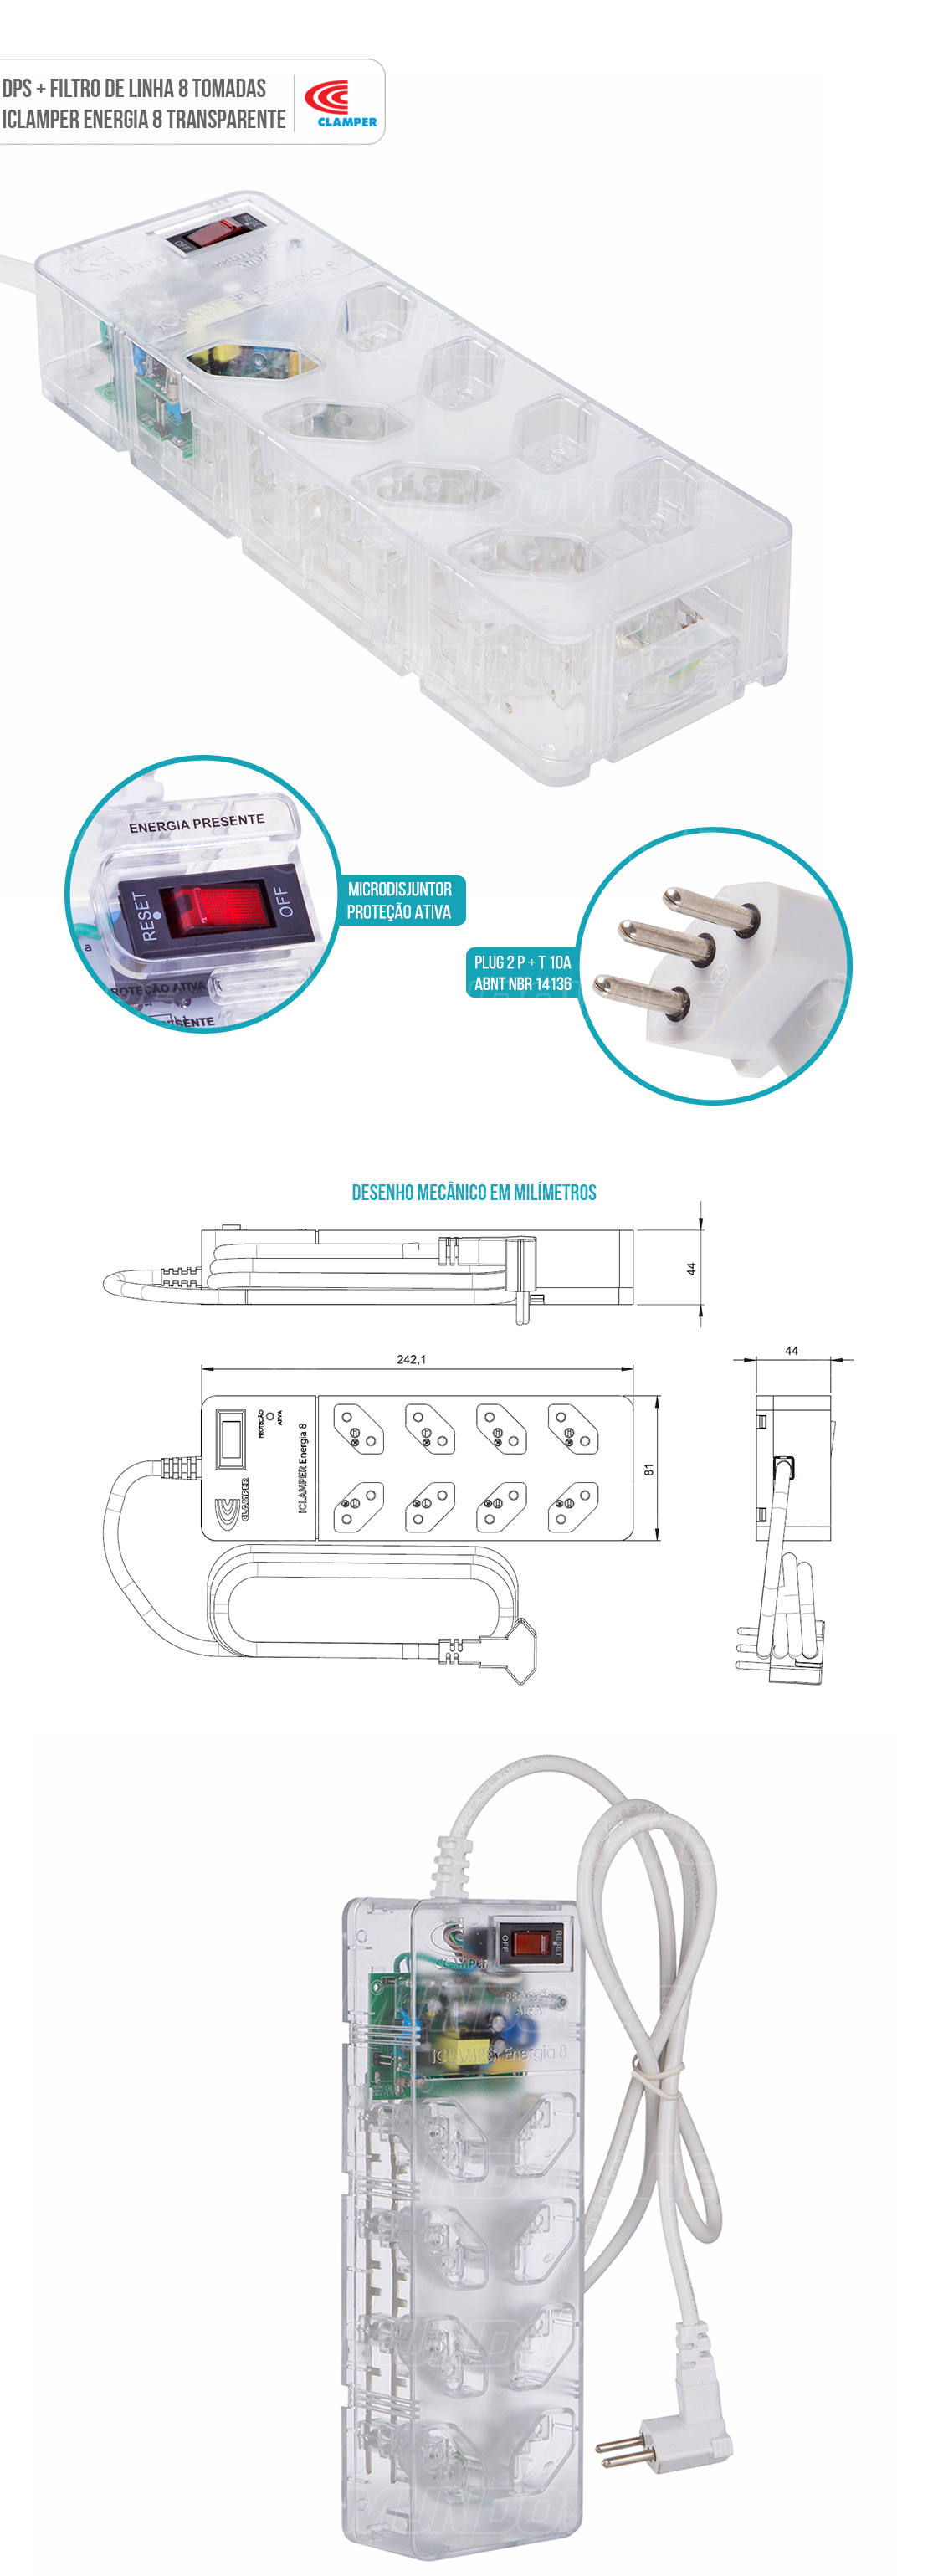 DPS Clamper Filtro de Linha com 8 Tomadas espaçadas Proteção Robusta contra Surtos Elétricos iClamper Energia 8 Clamper Transparente